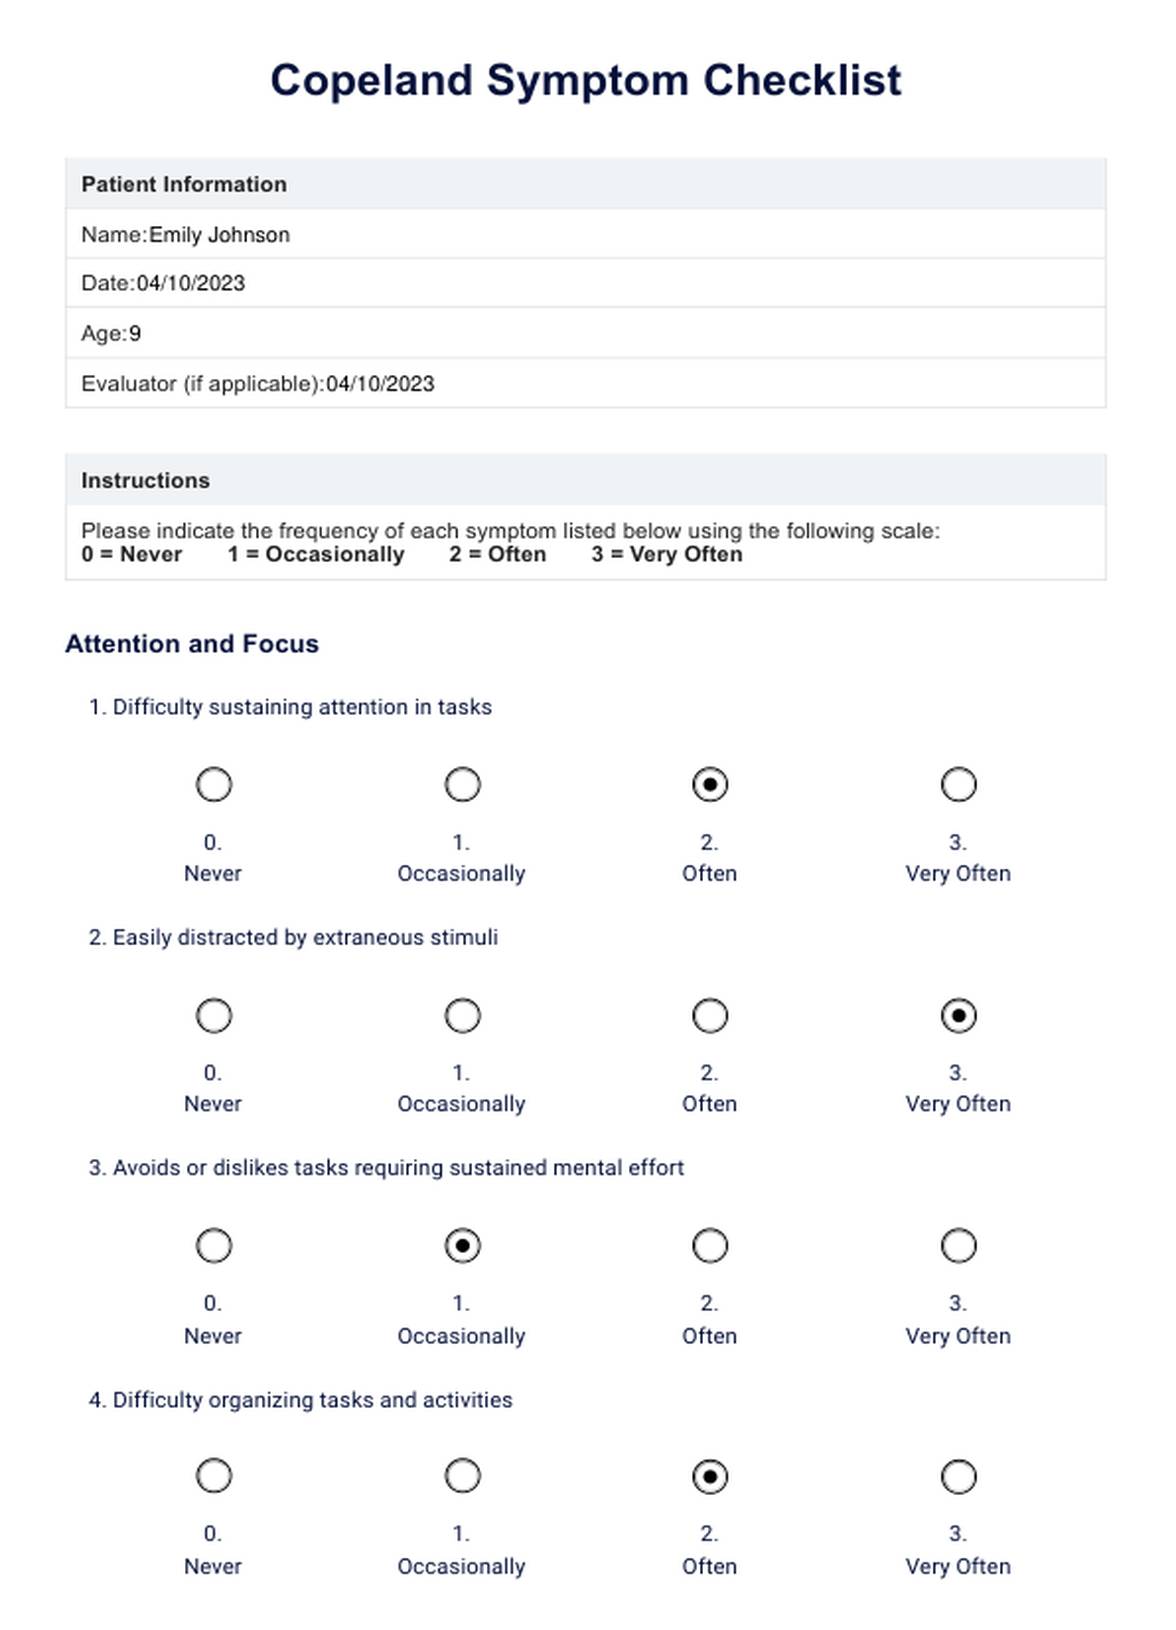 Copeland Symptom Checklist PDF Example